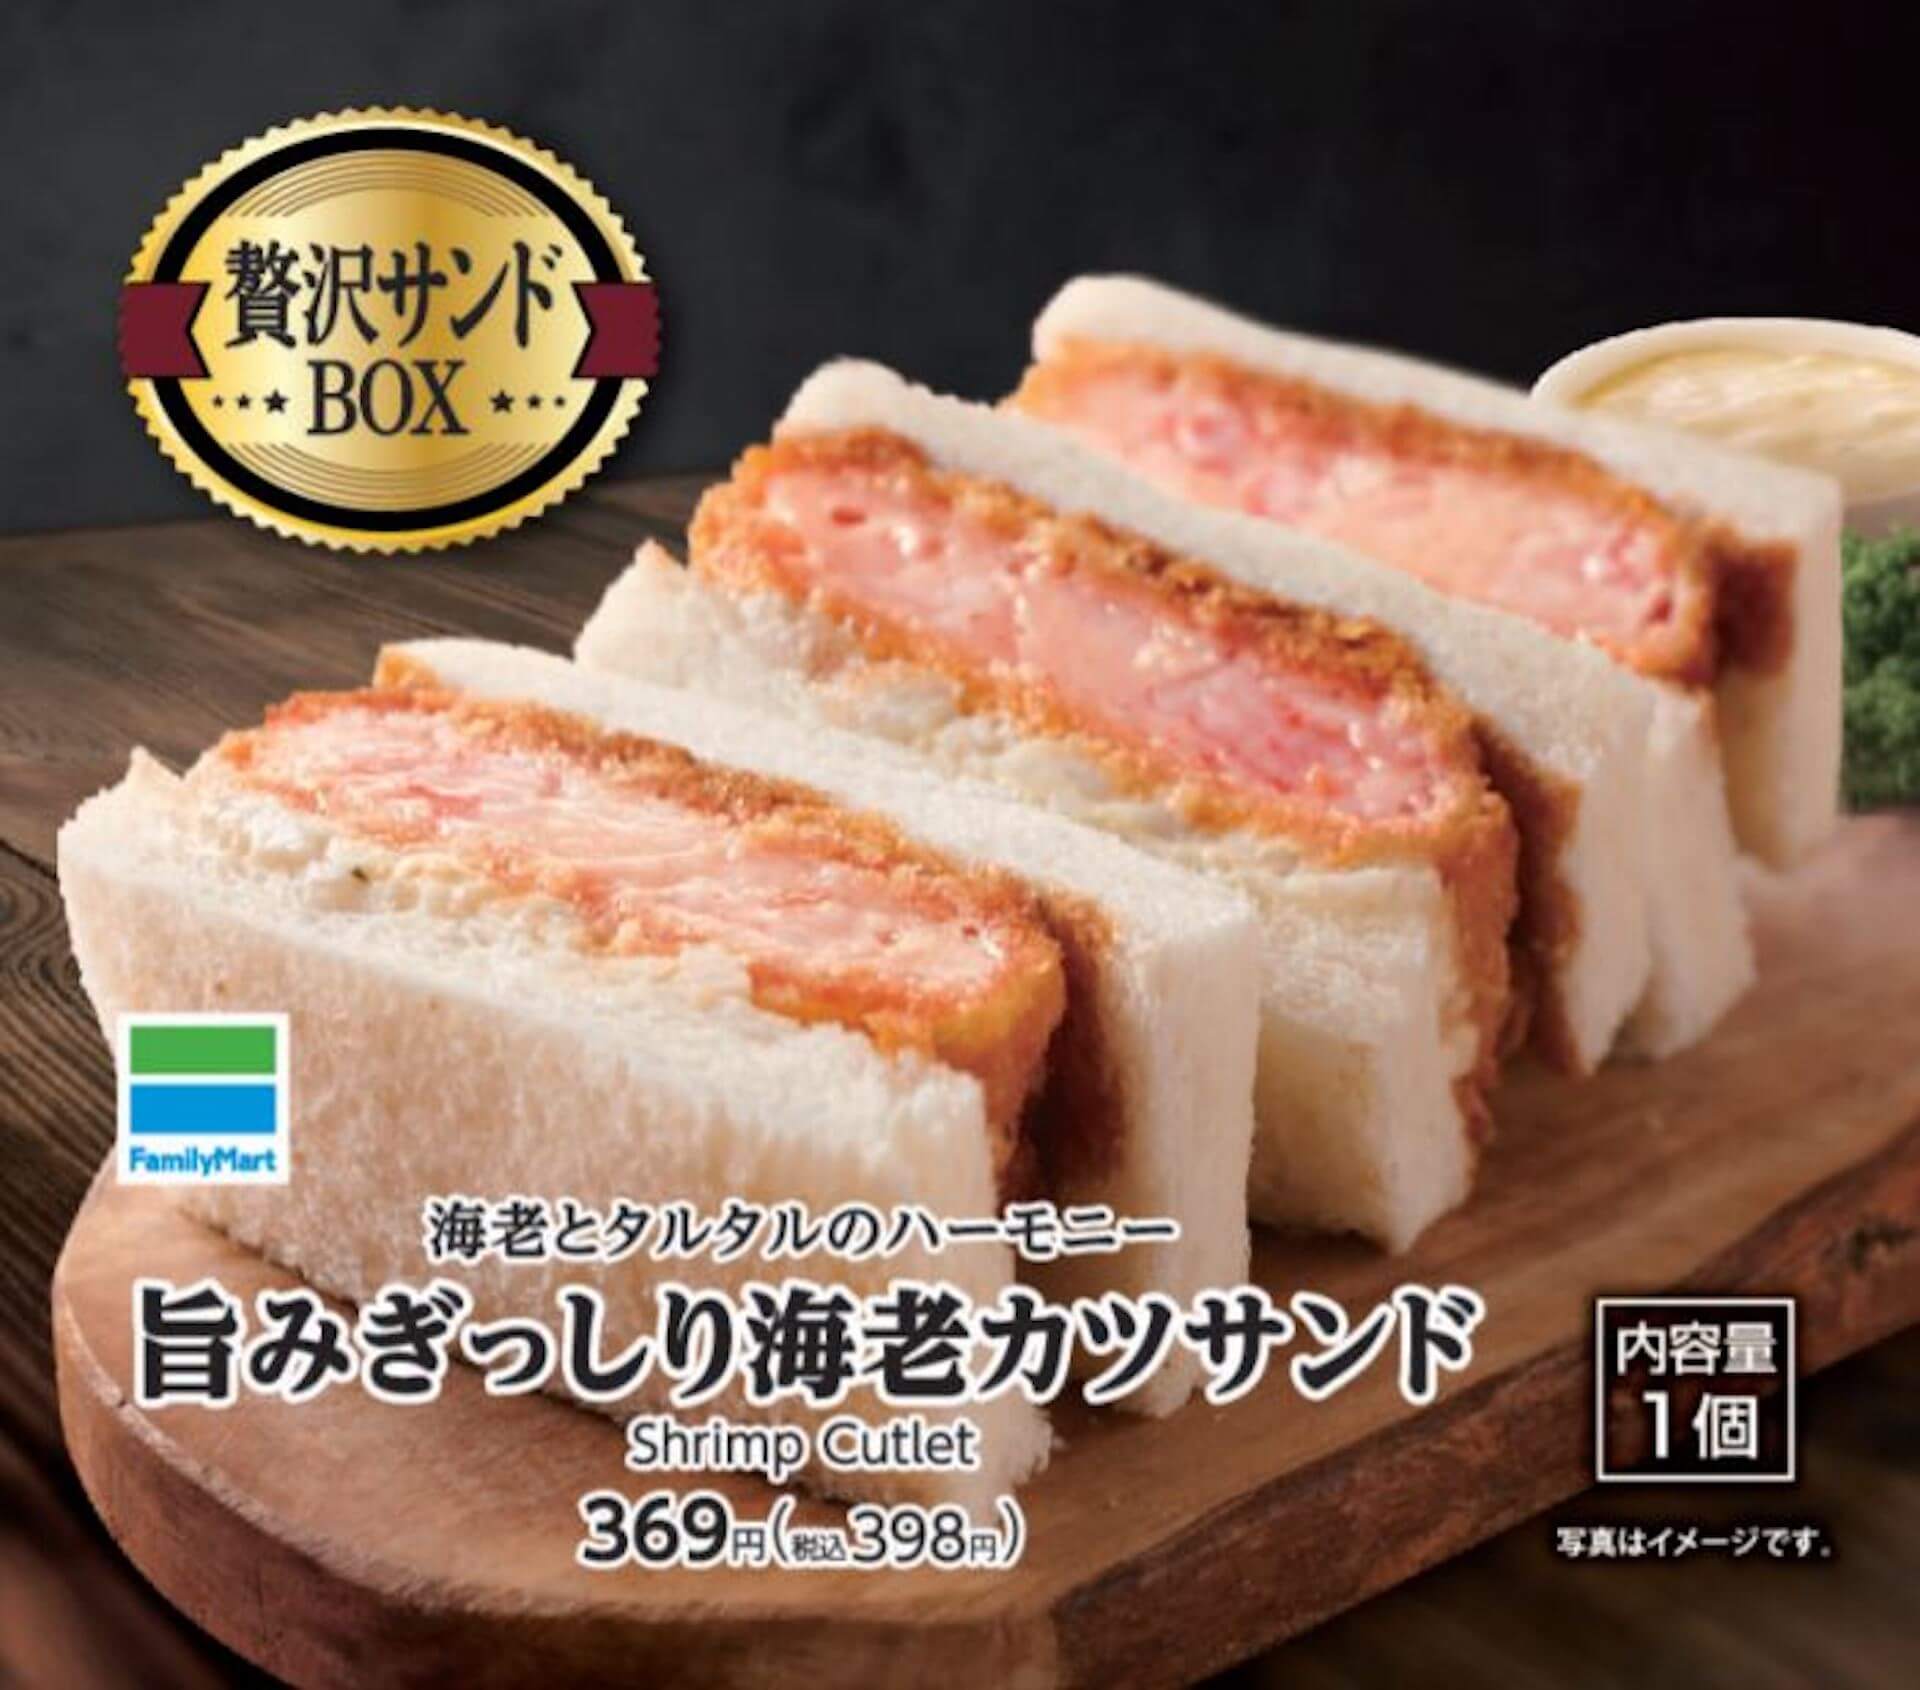 ファミリーマートのBOXサンドイッチにプレミアムライン「贅沢サンドBOX」が登場！ひれかつサンド＆海老カツサンドが発売 gourmet210629_familymart_sandwich_2